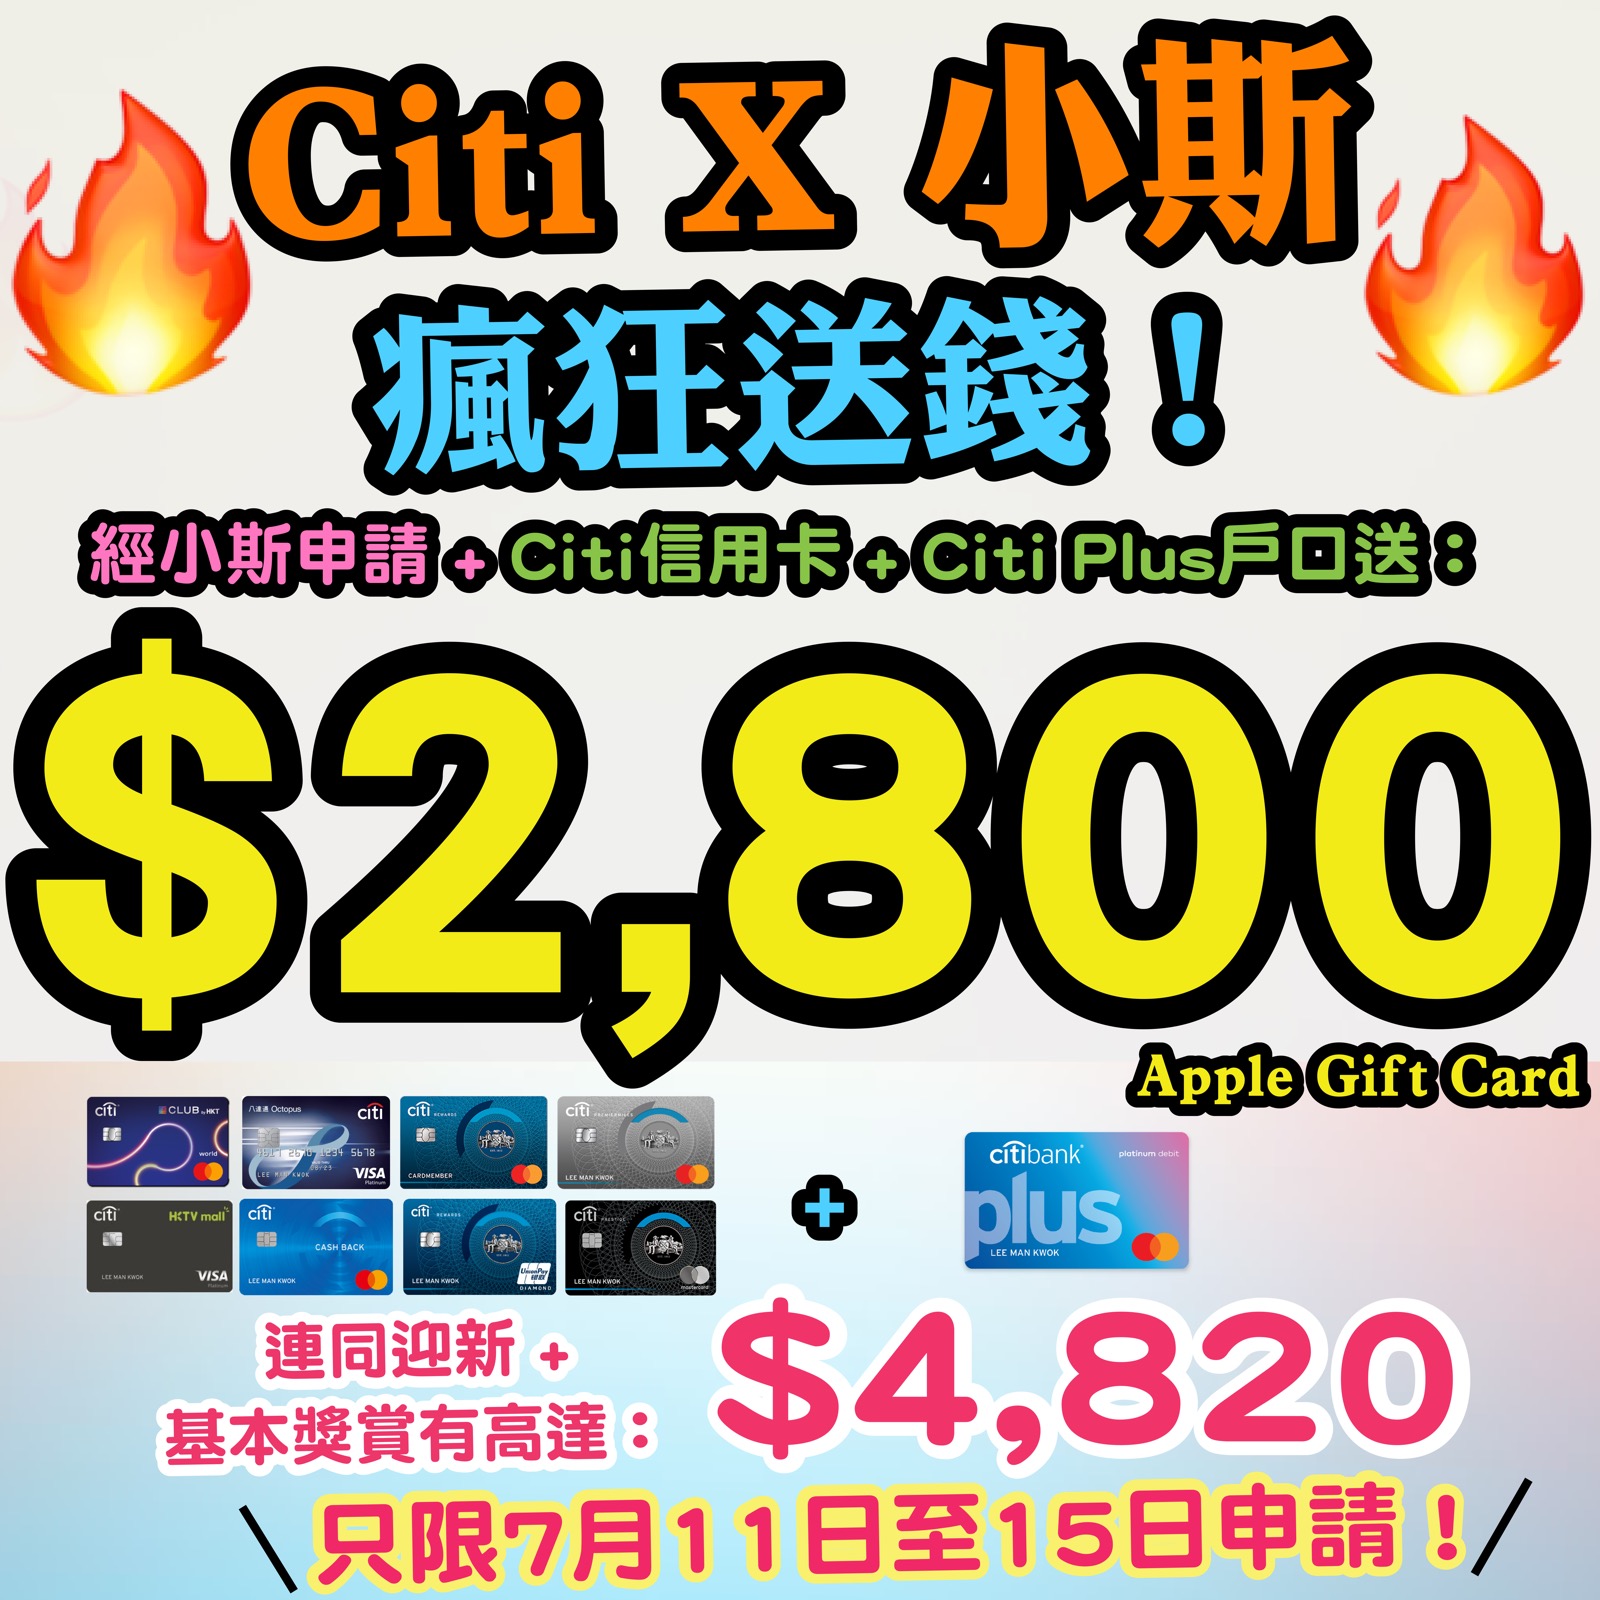 【🔥🔥🔥限時優惠❗❗小斯Citi Plus戶口送$800❗❗】記得要喺9月16日至9月30日期間，經小斯申請Citi Plus戶口，毋須放錢/簽賬可以有$600 Apple Gift Card/超市禮券！存入HK$10,000新資金再多HK$200現金回贈！